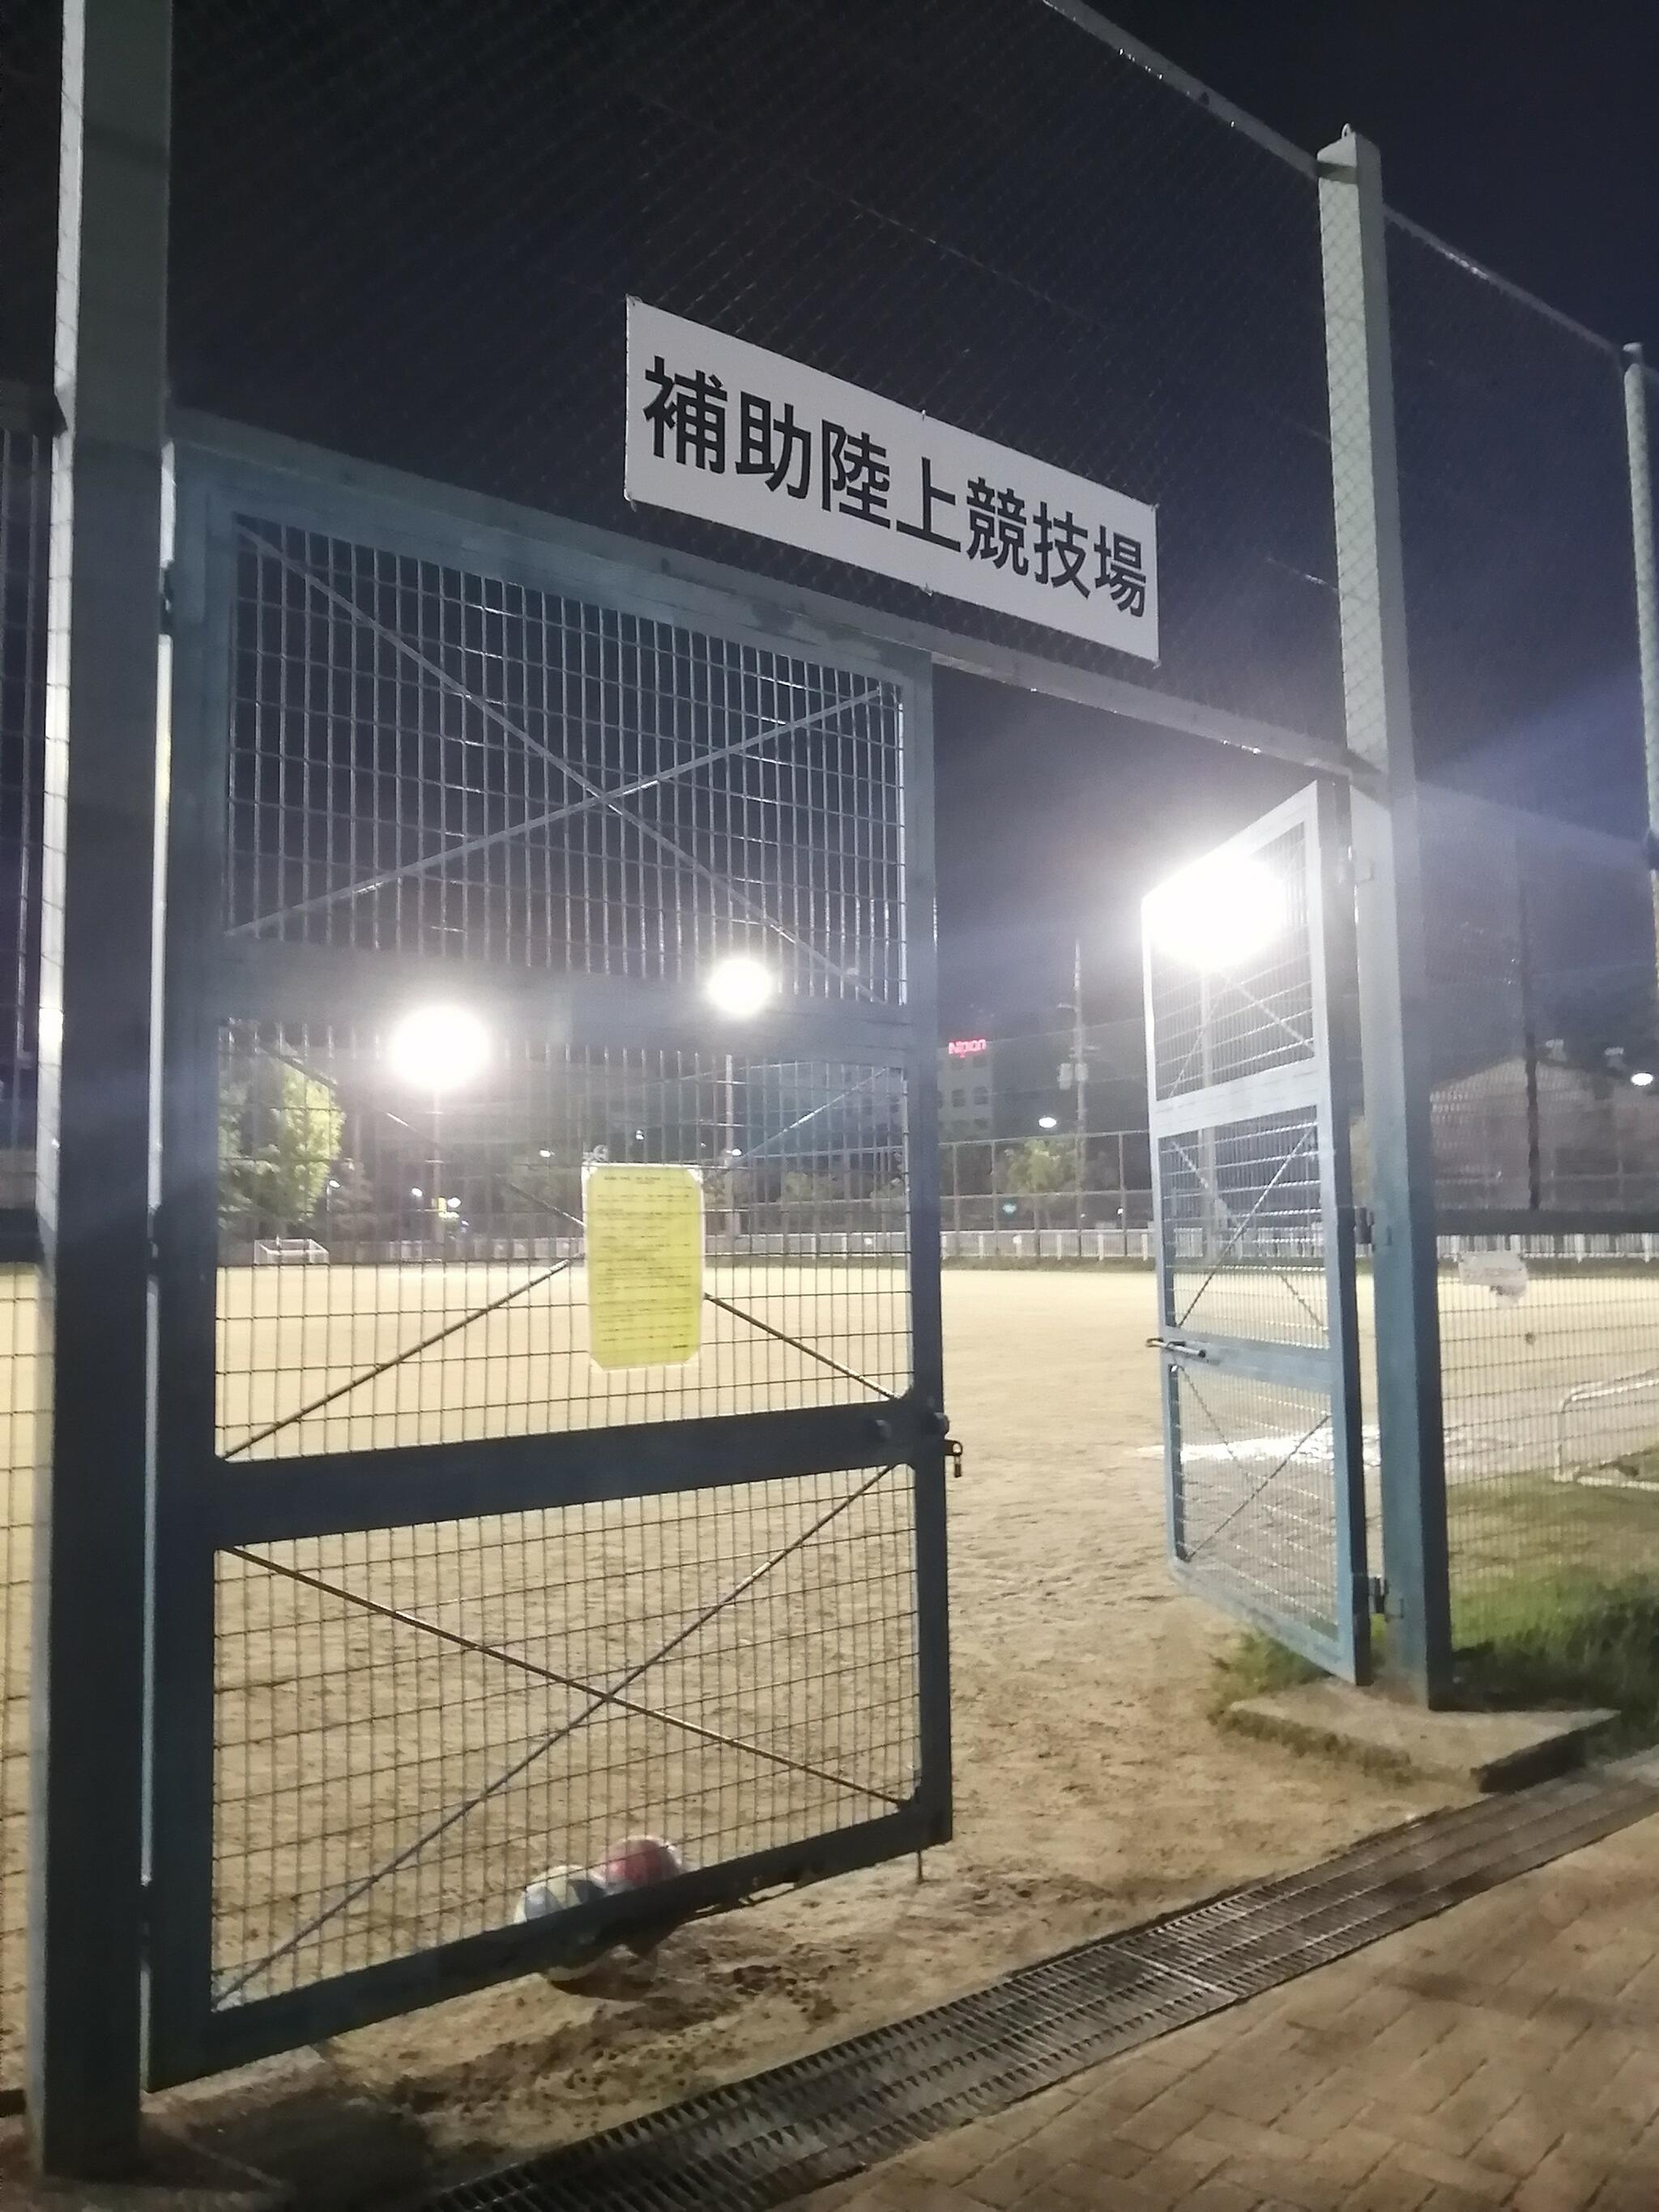 尼崎市スポーツ振興事業団 ベイコム陸上競技場の代表写真5